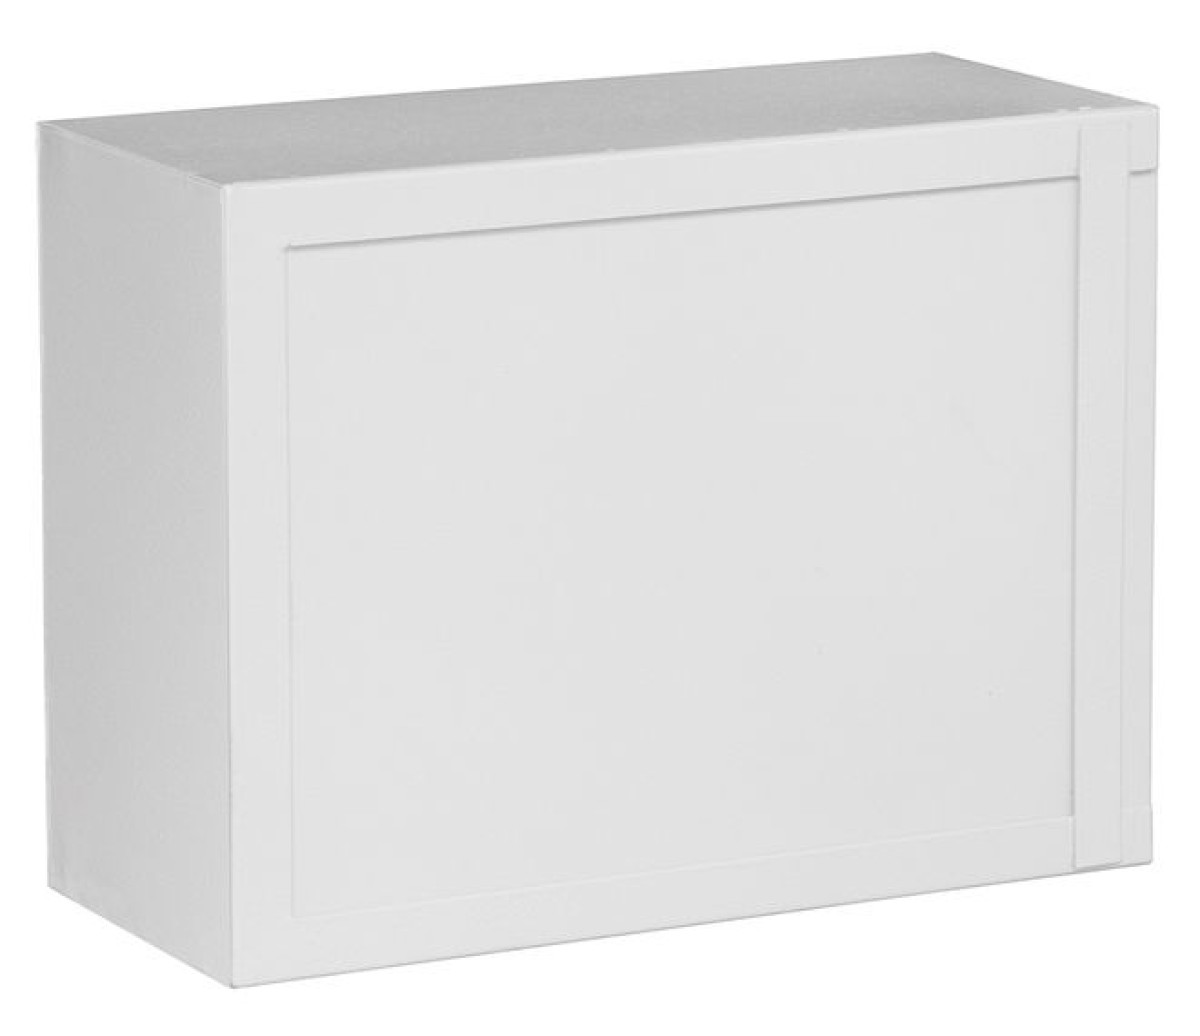 Антивандальный шкаф БК-330-1 с планкой К-3714 98_85.jpg - фото 1